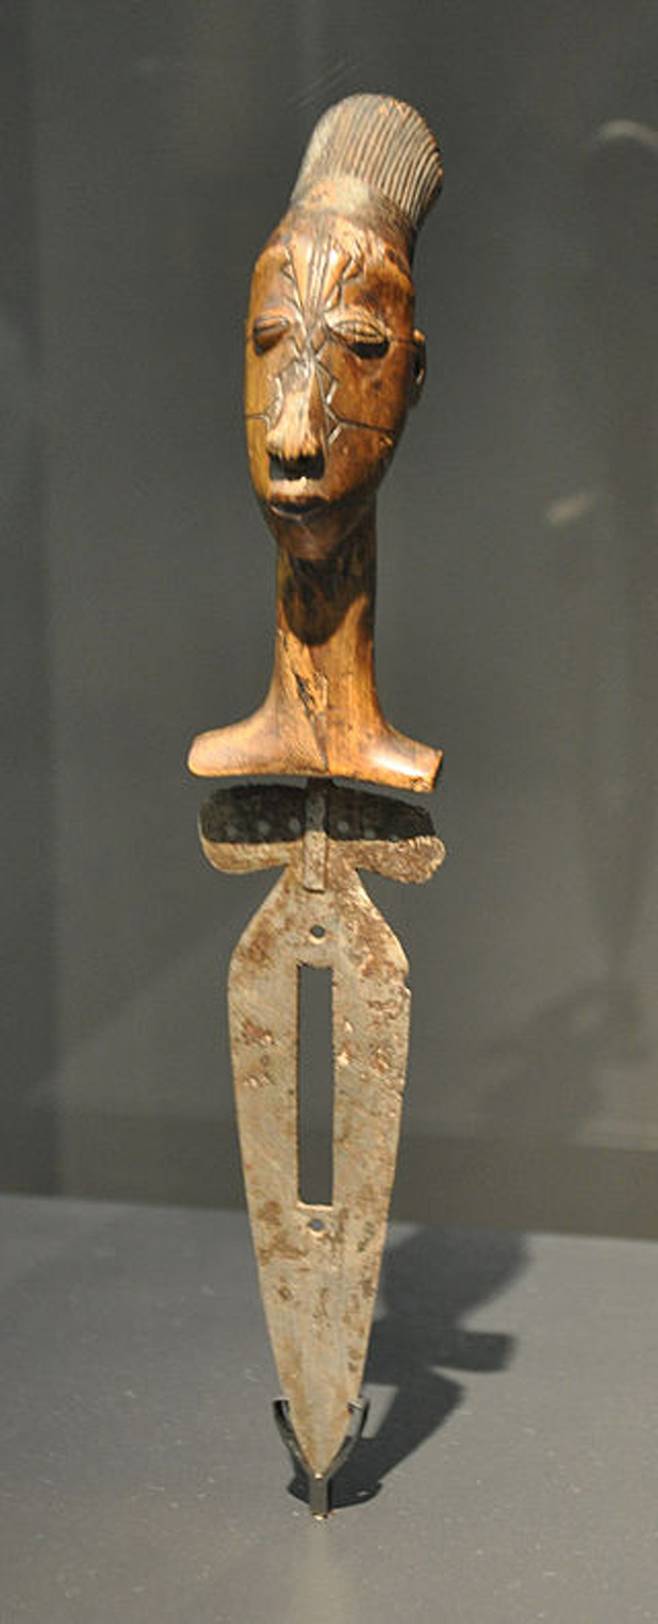 아프리카와 중동에서는 기원전부터 남성 성기의 포피를 벗기는 할례가 행해진 것으로 전해진다. 사진은 콩고 공화국에서 할례에 사용된 나무 칼. 19세기 말 추정 작품.